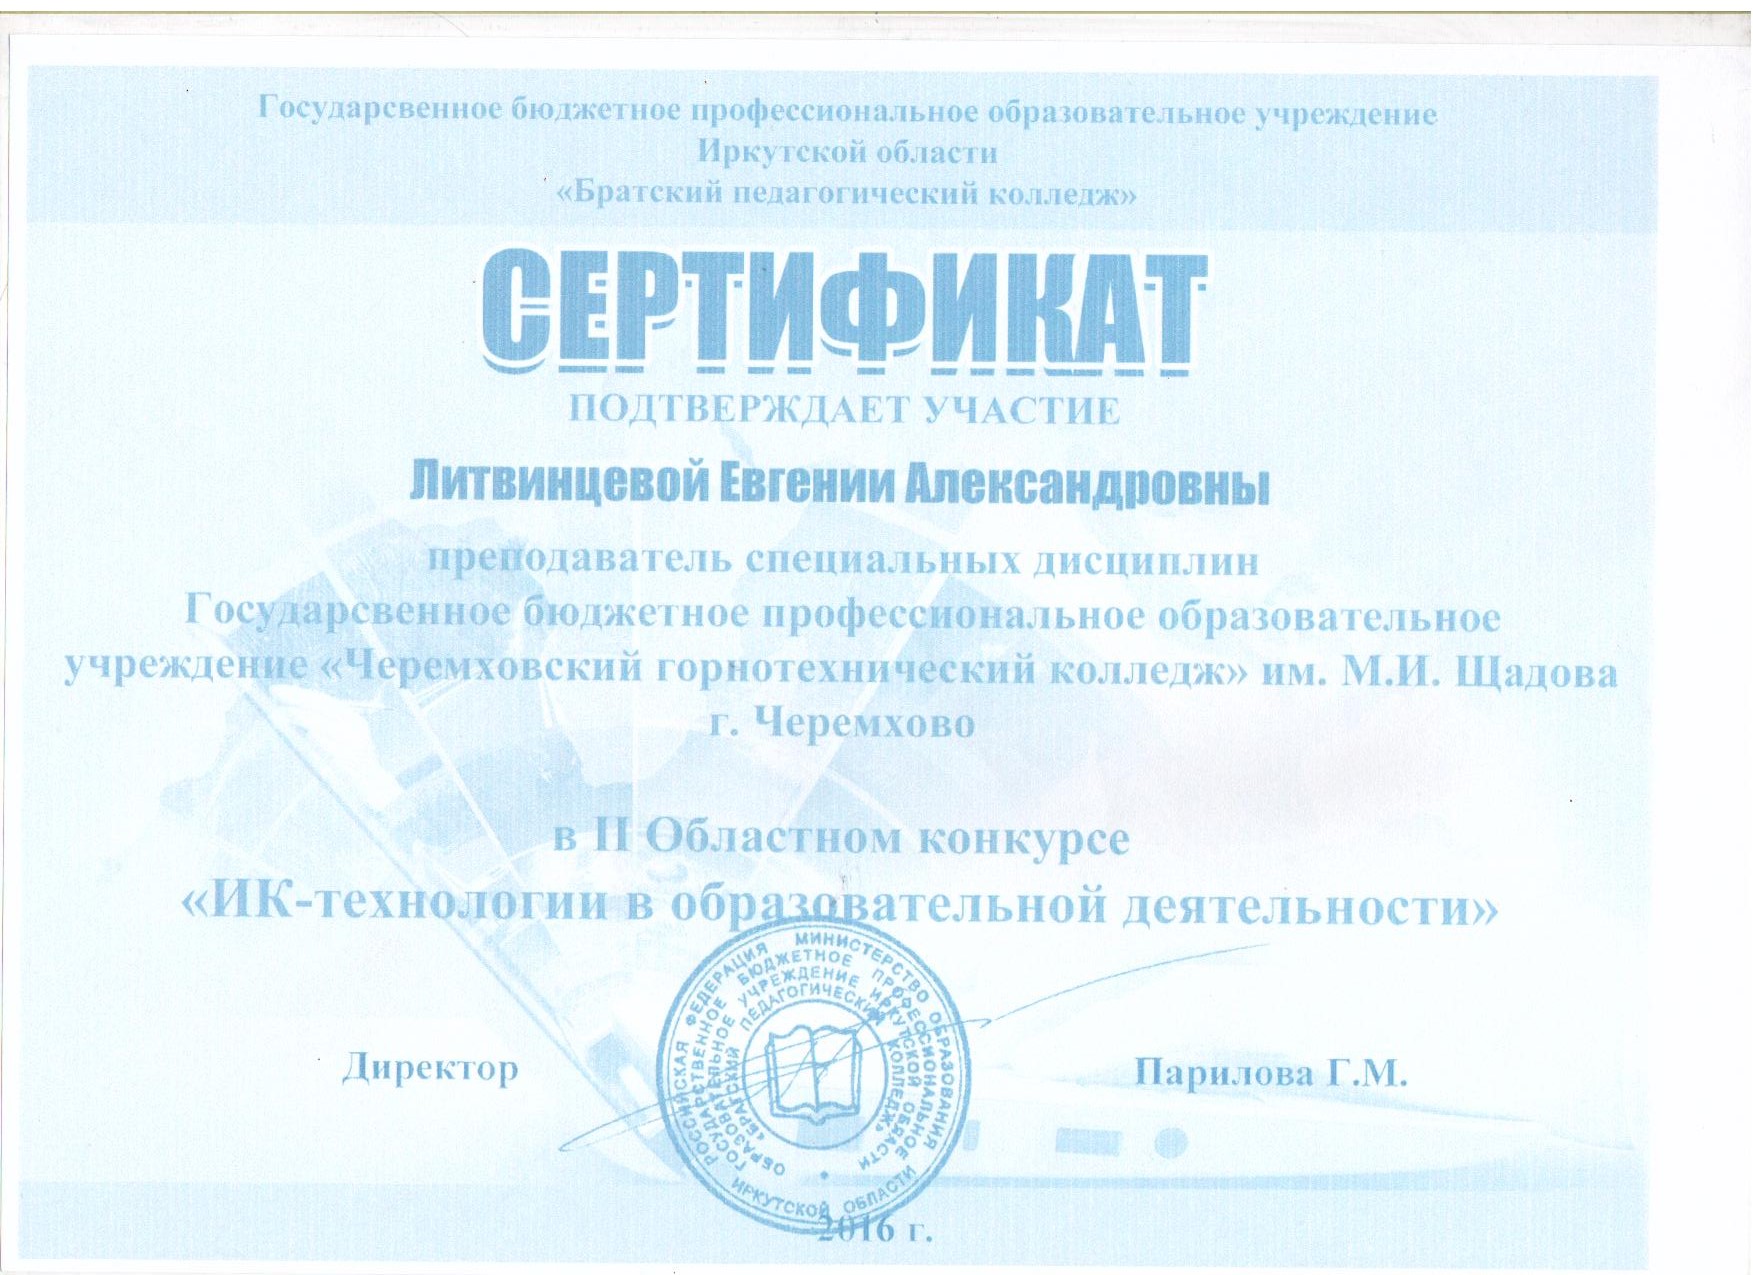 Сертификат участия во II Областном конкурсе ИК - технологии в образовательной деятельности